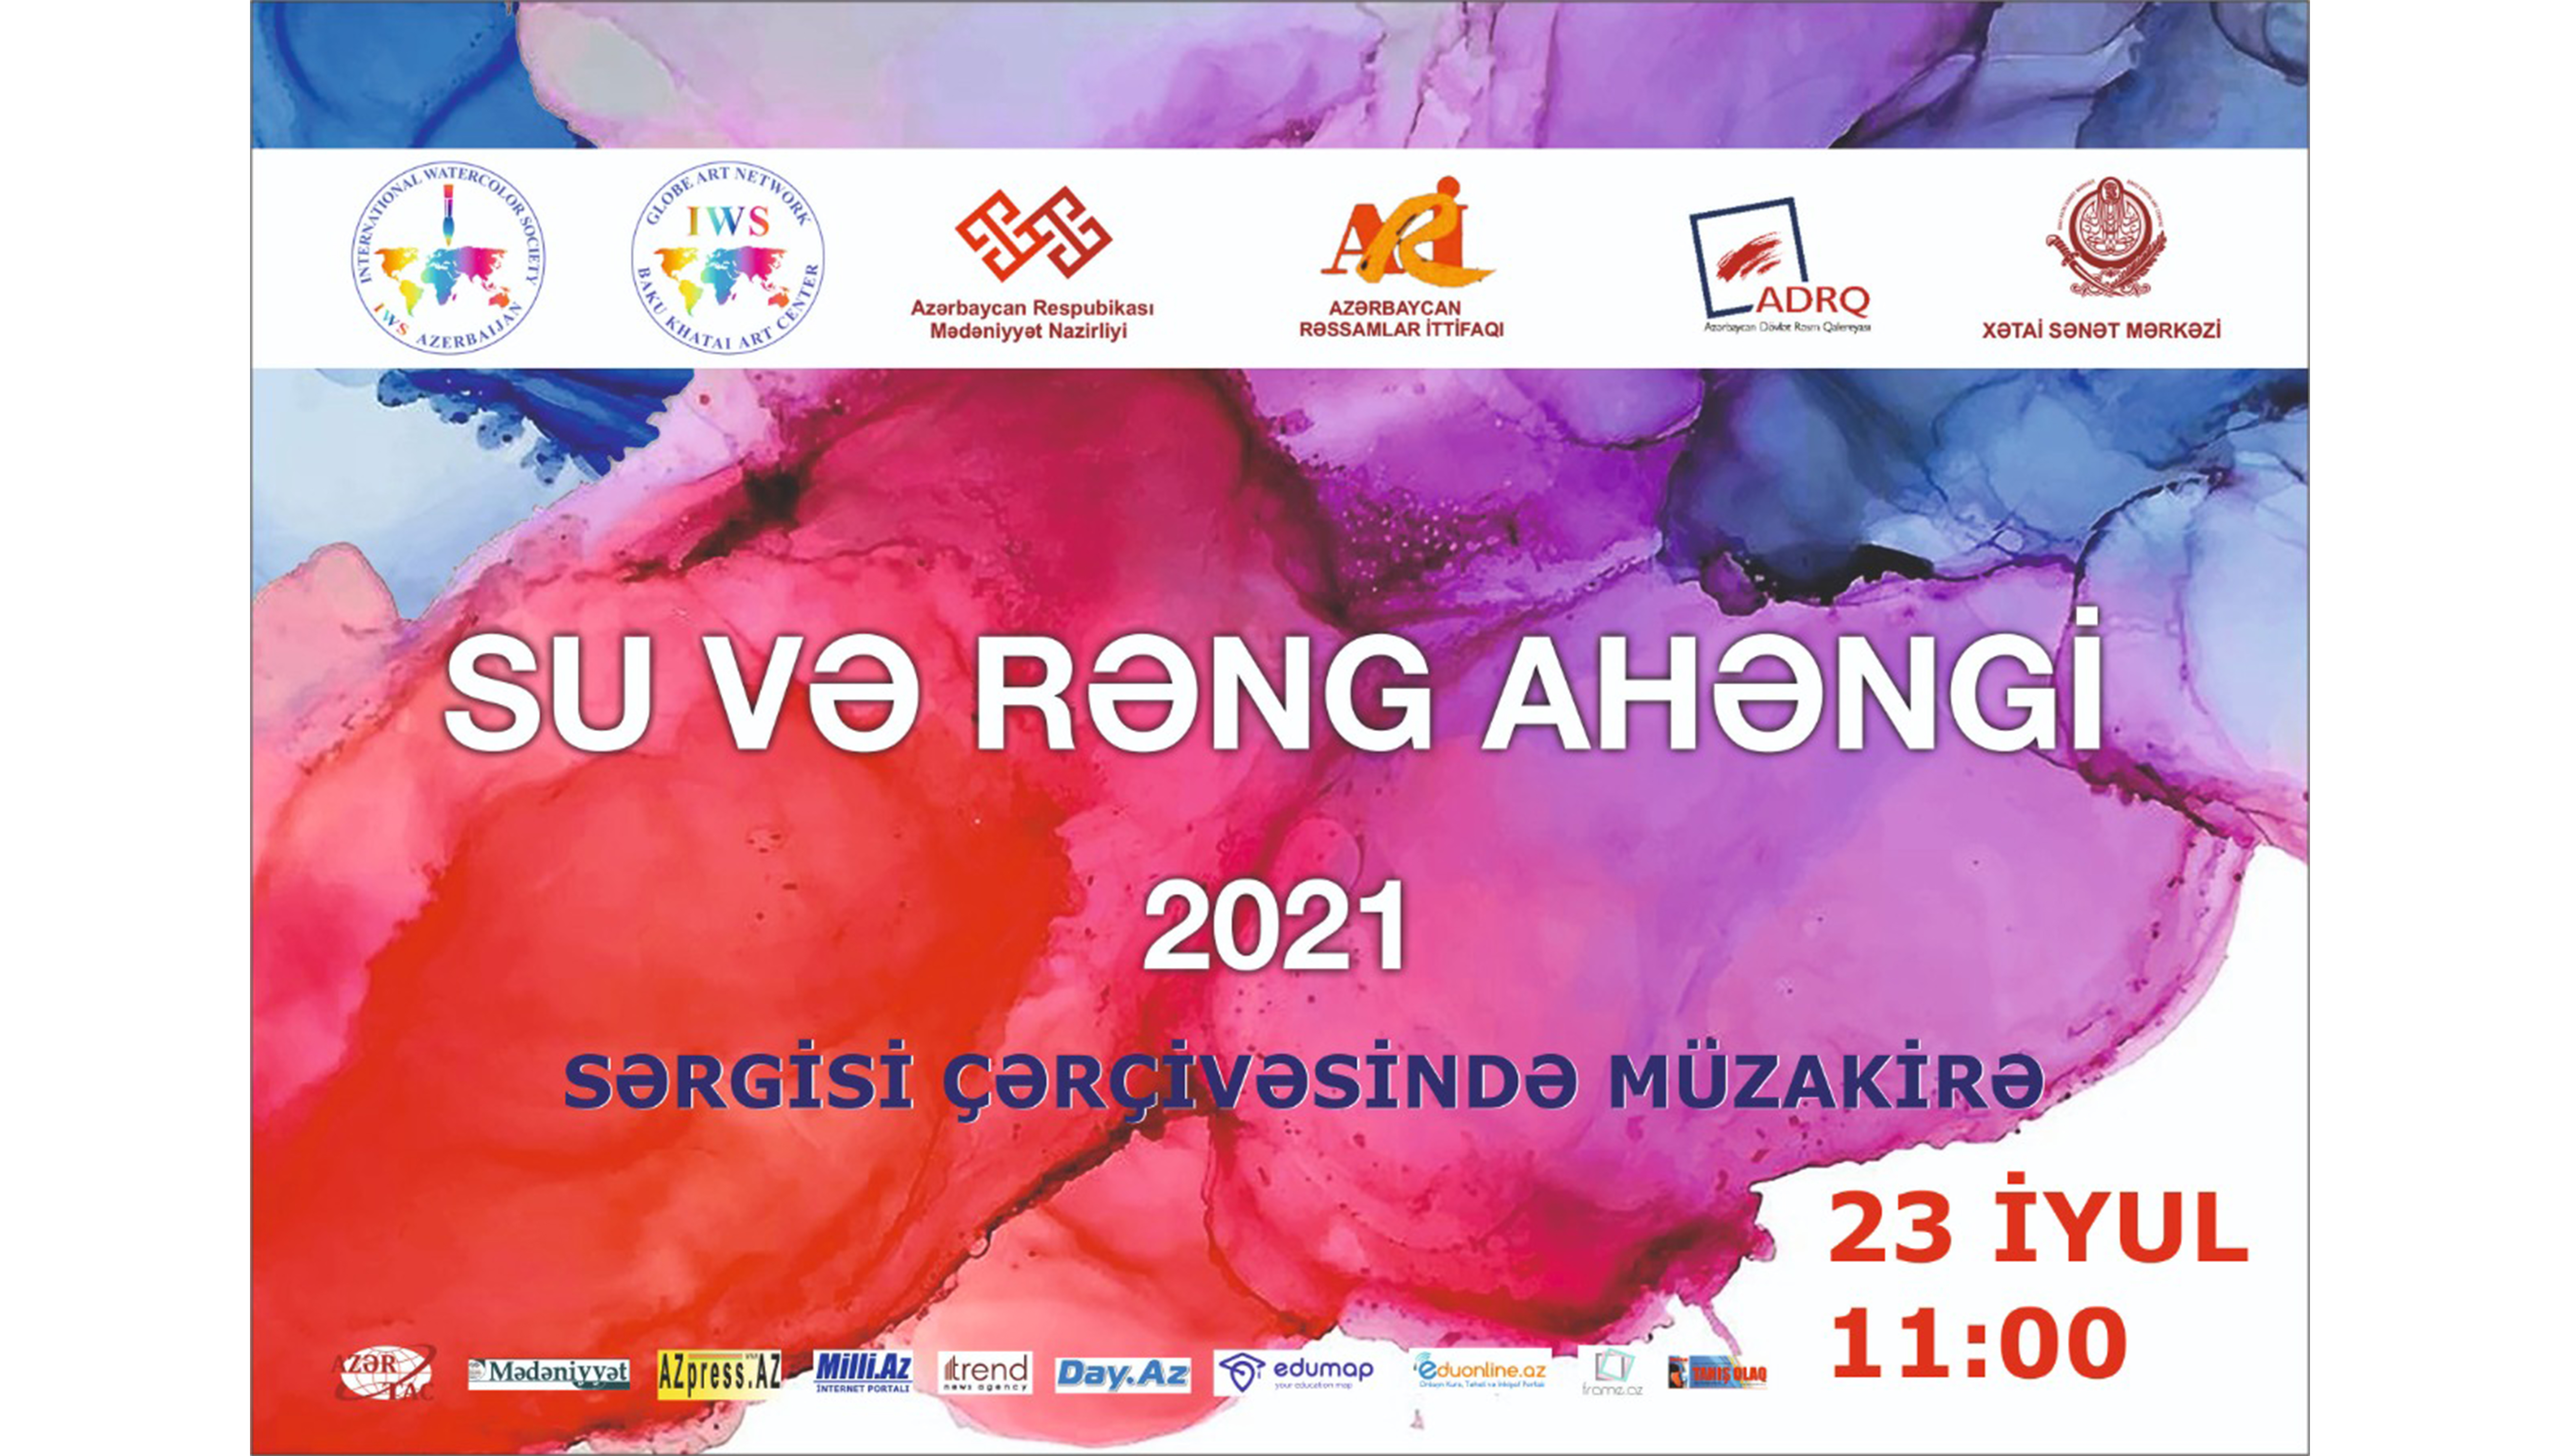 “Su və rəng ahəngi-2021” akvarel sərgisi çərçivəsində müzakirə keçiriləcək.